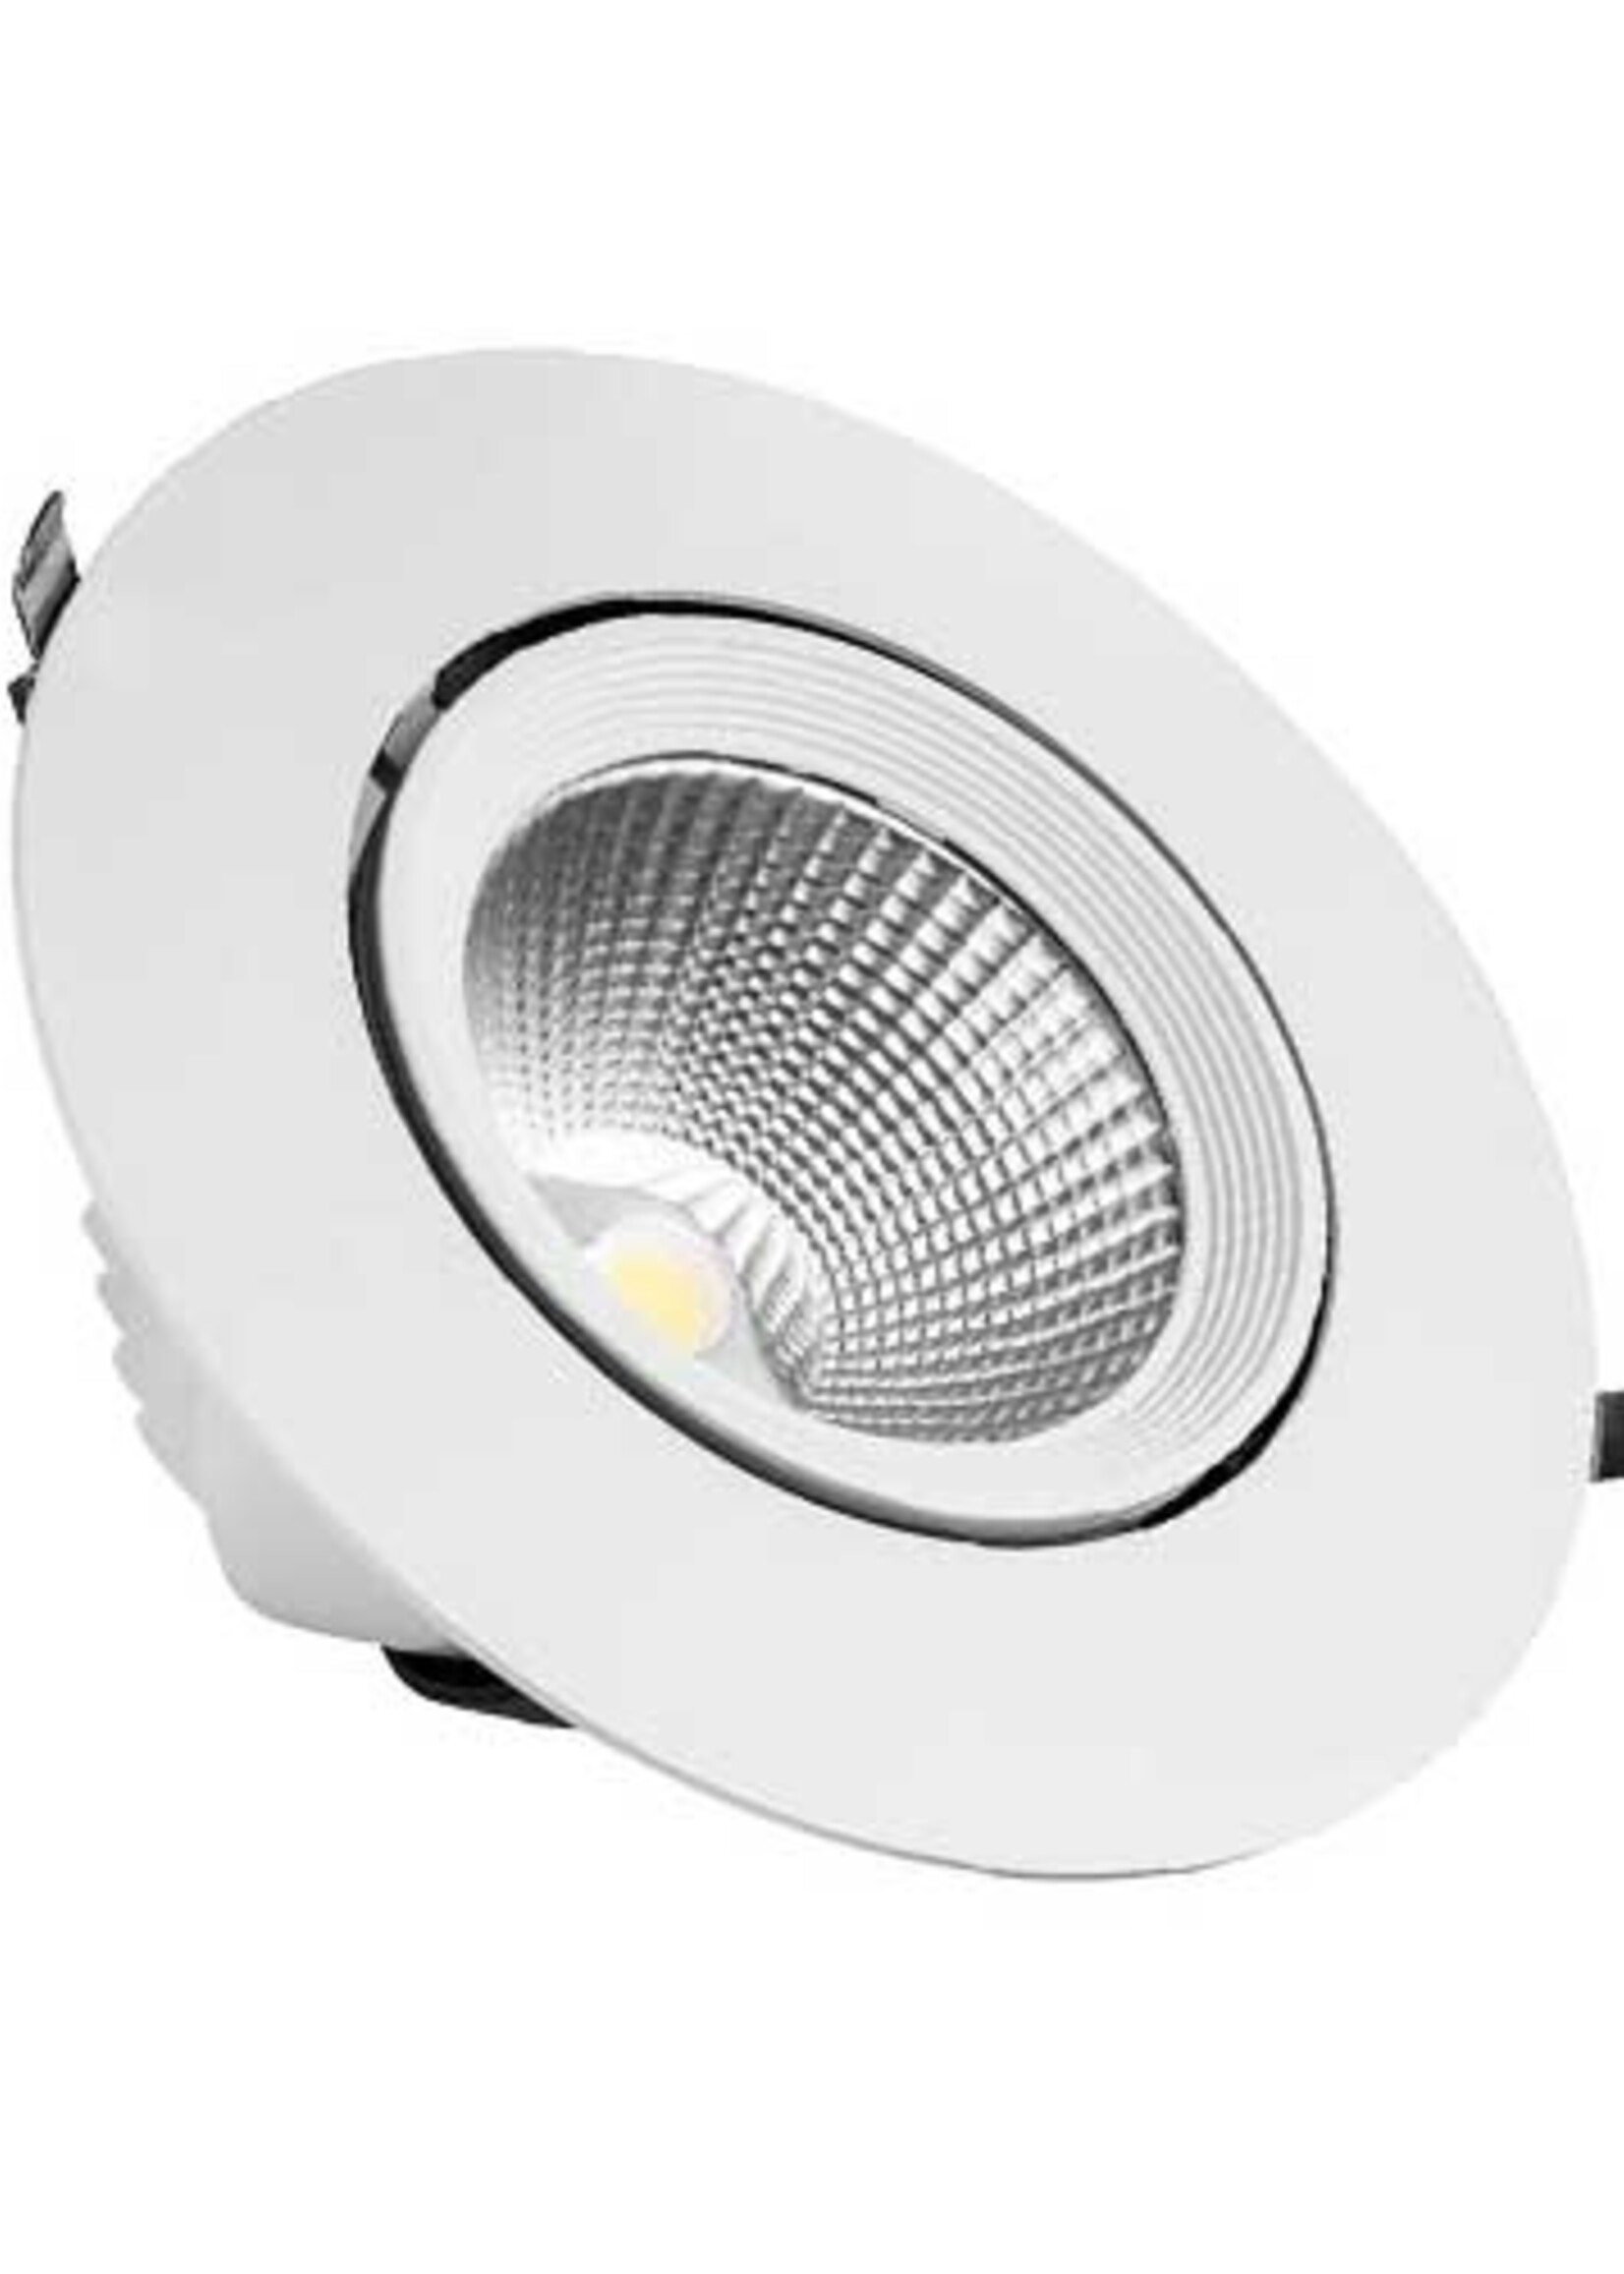 LEDWINKEL-Online LED Banana recessed spot 30W 4000K bright white ⌀165mm 45° Tiltable 360° Rotatable